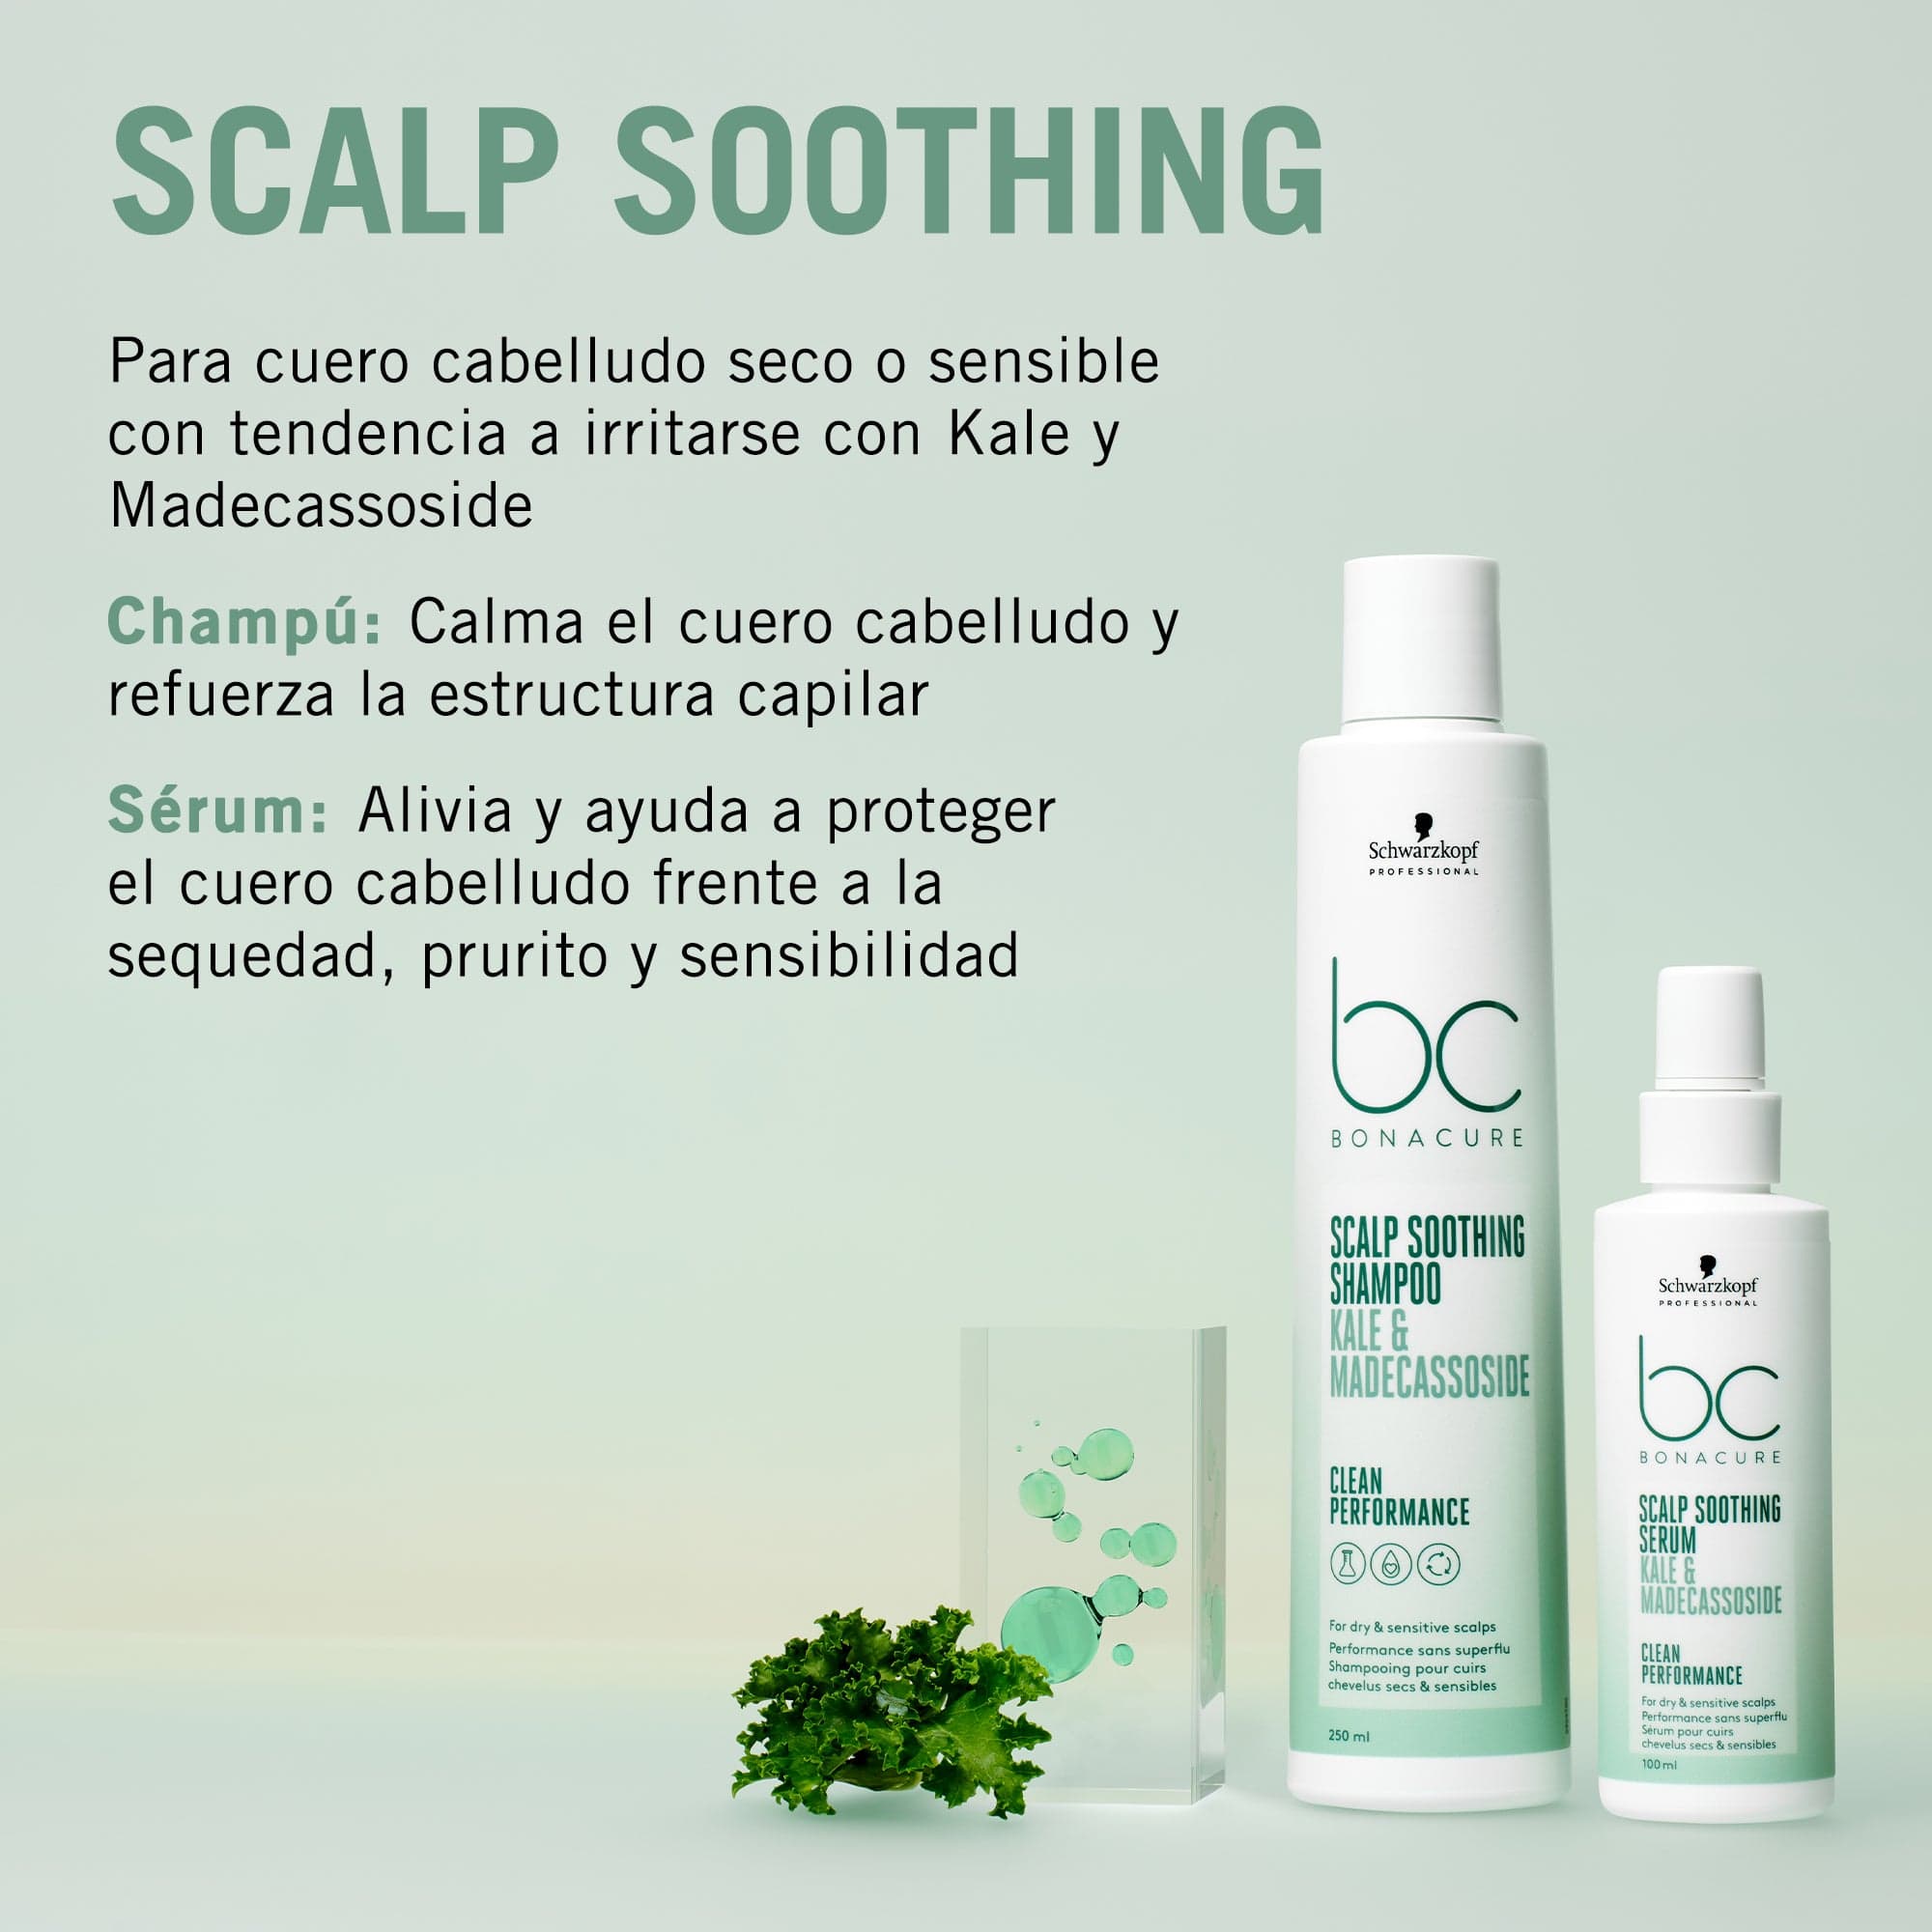 BC Bonacure Shampoo Bonacure Scalp Genesis Champú Calmante 1000ml Roberta Beauty Club Tienda Online Productos de Peluqueria